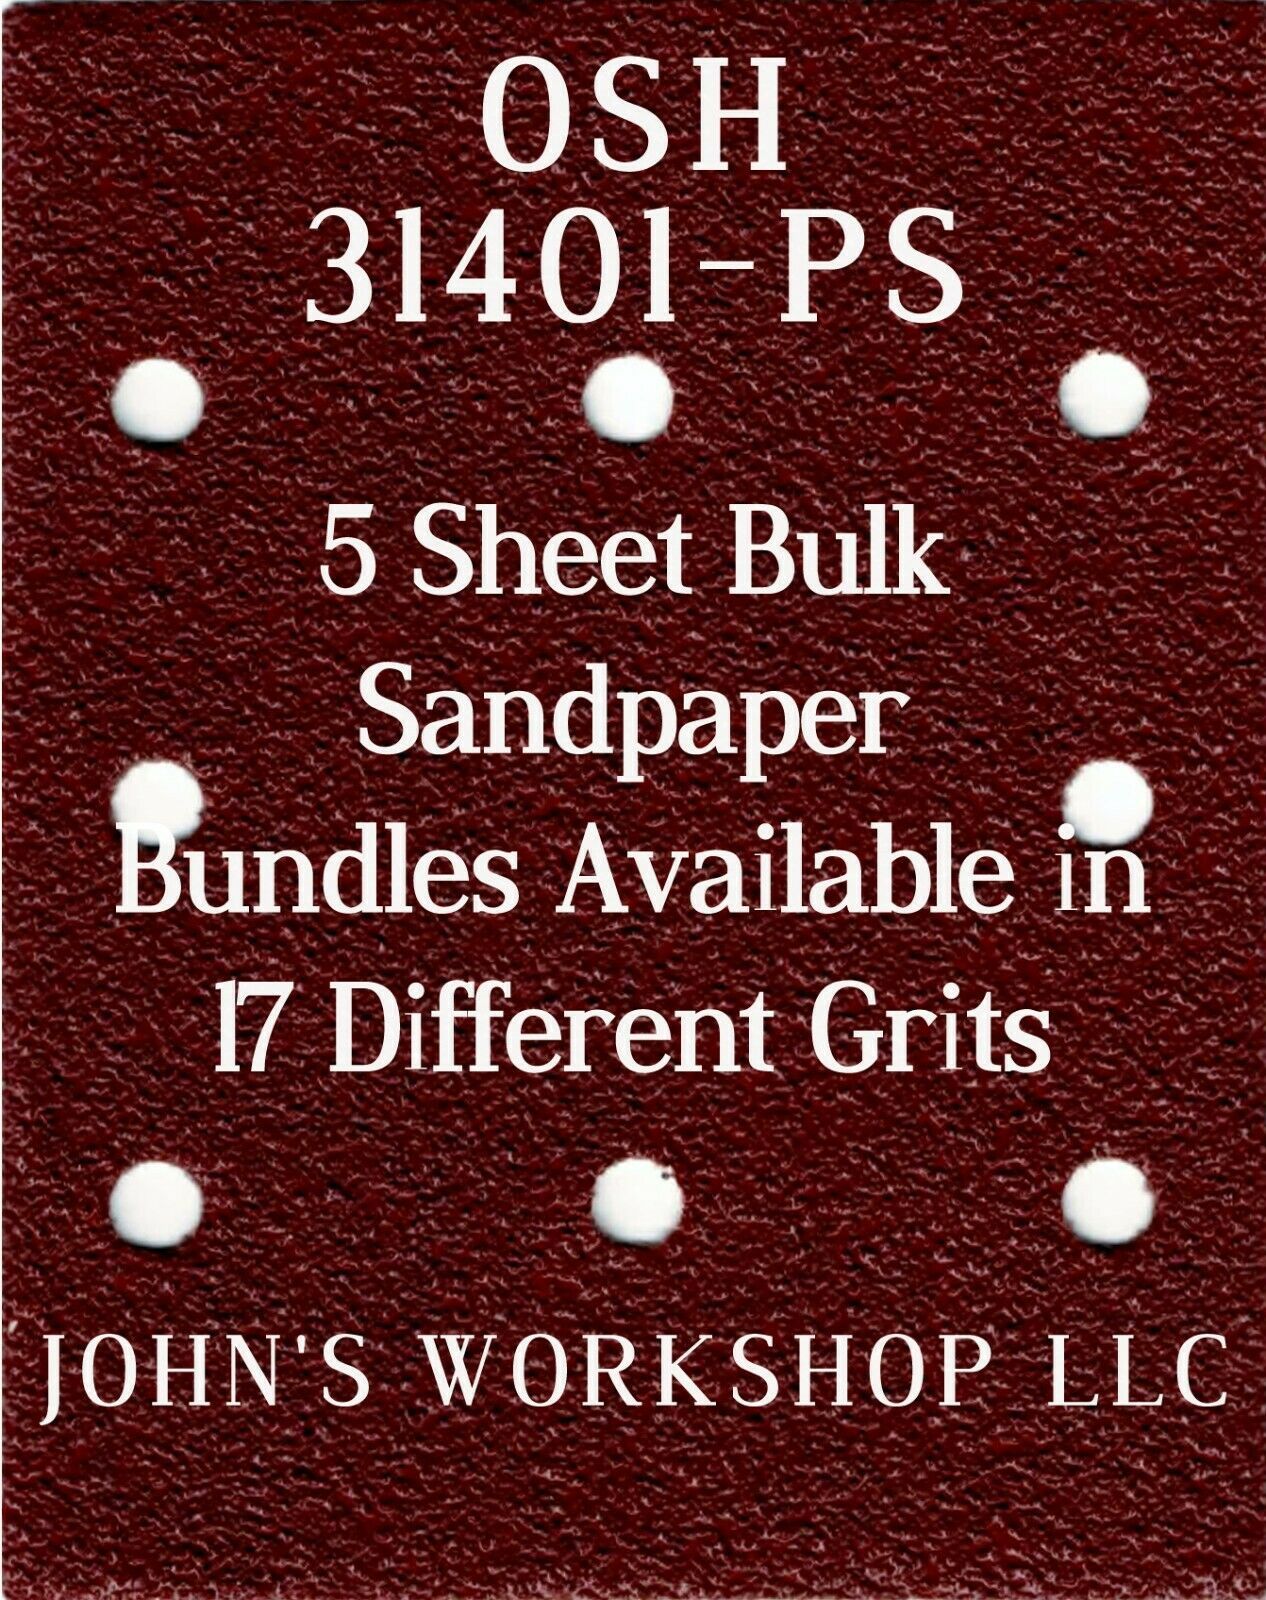 Primary image for OSH 31401-PS - 1/4 Sheet - 17 Grits - No-Slip - 5 Sandpaper Bulk Bundles